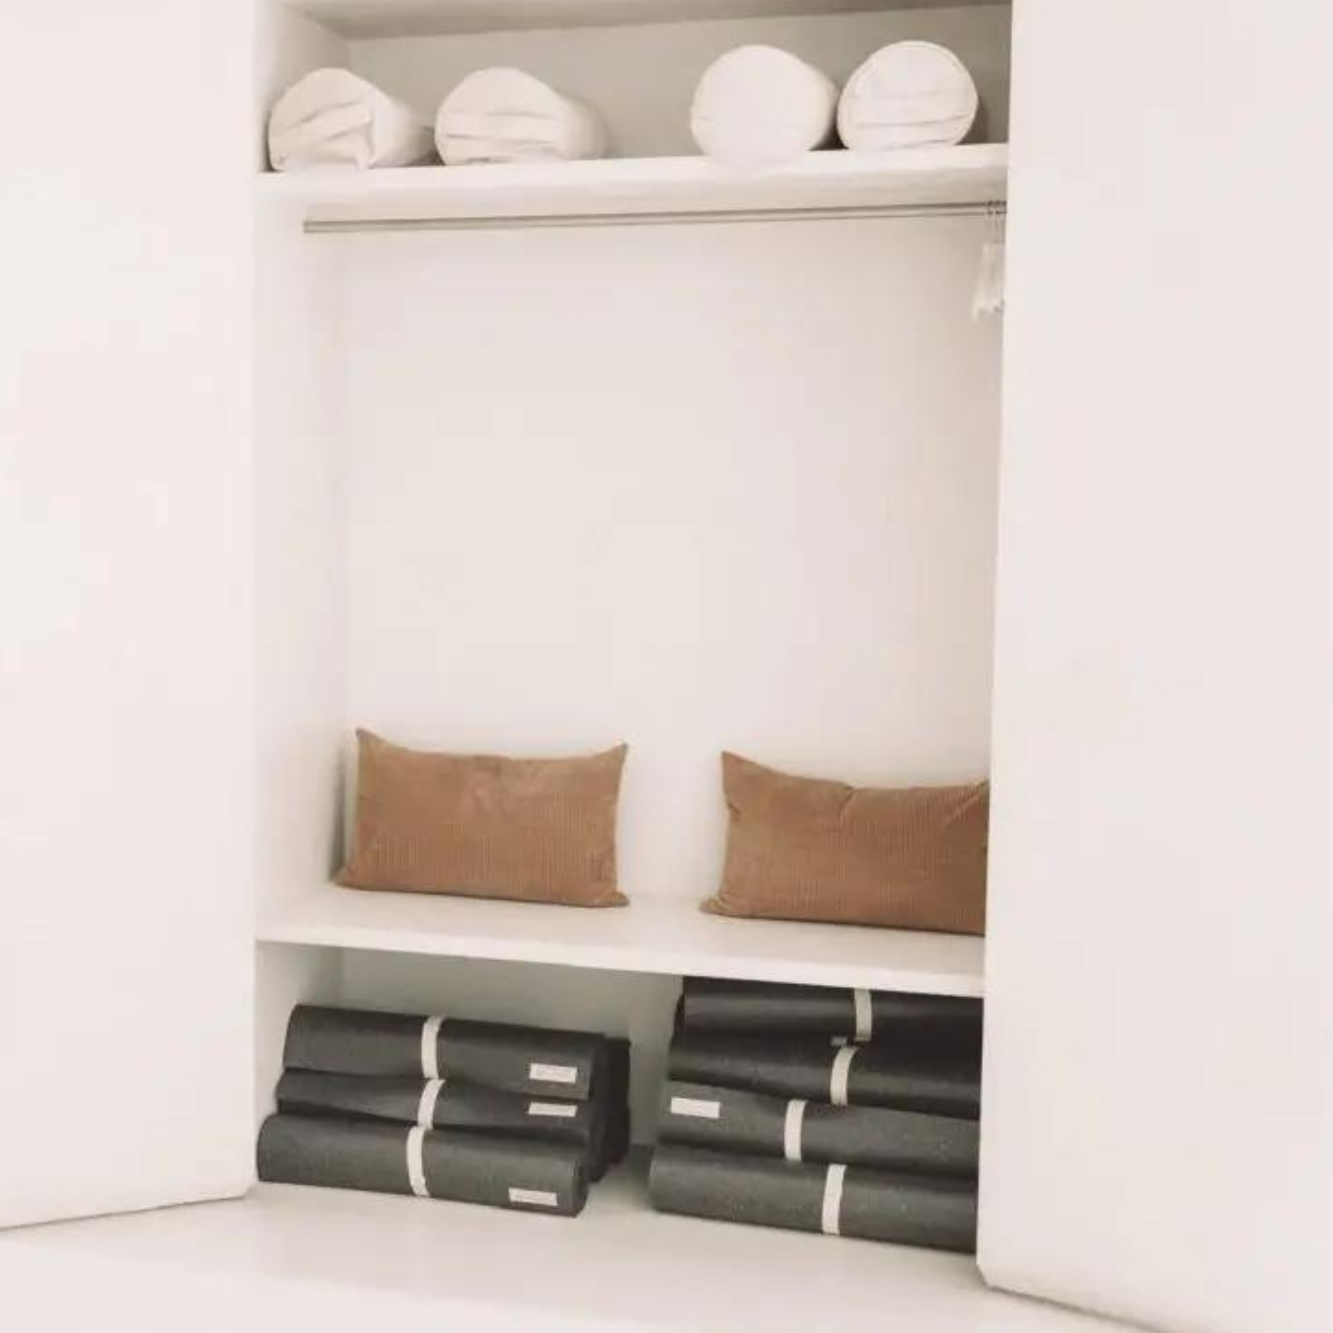 Die dunklen hejhej-mats und hejhej-bolster sind schön in einem weißen Schrank aufgewahrt